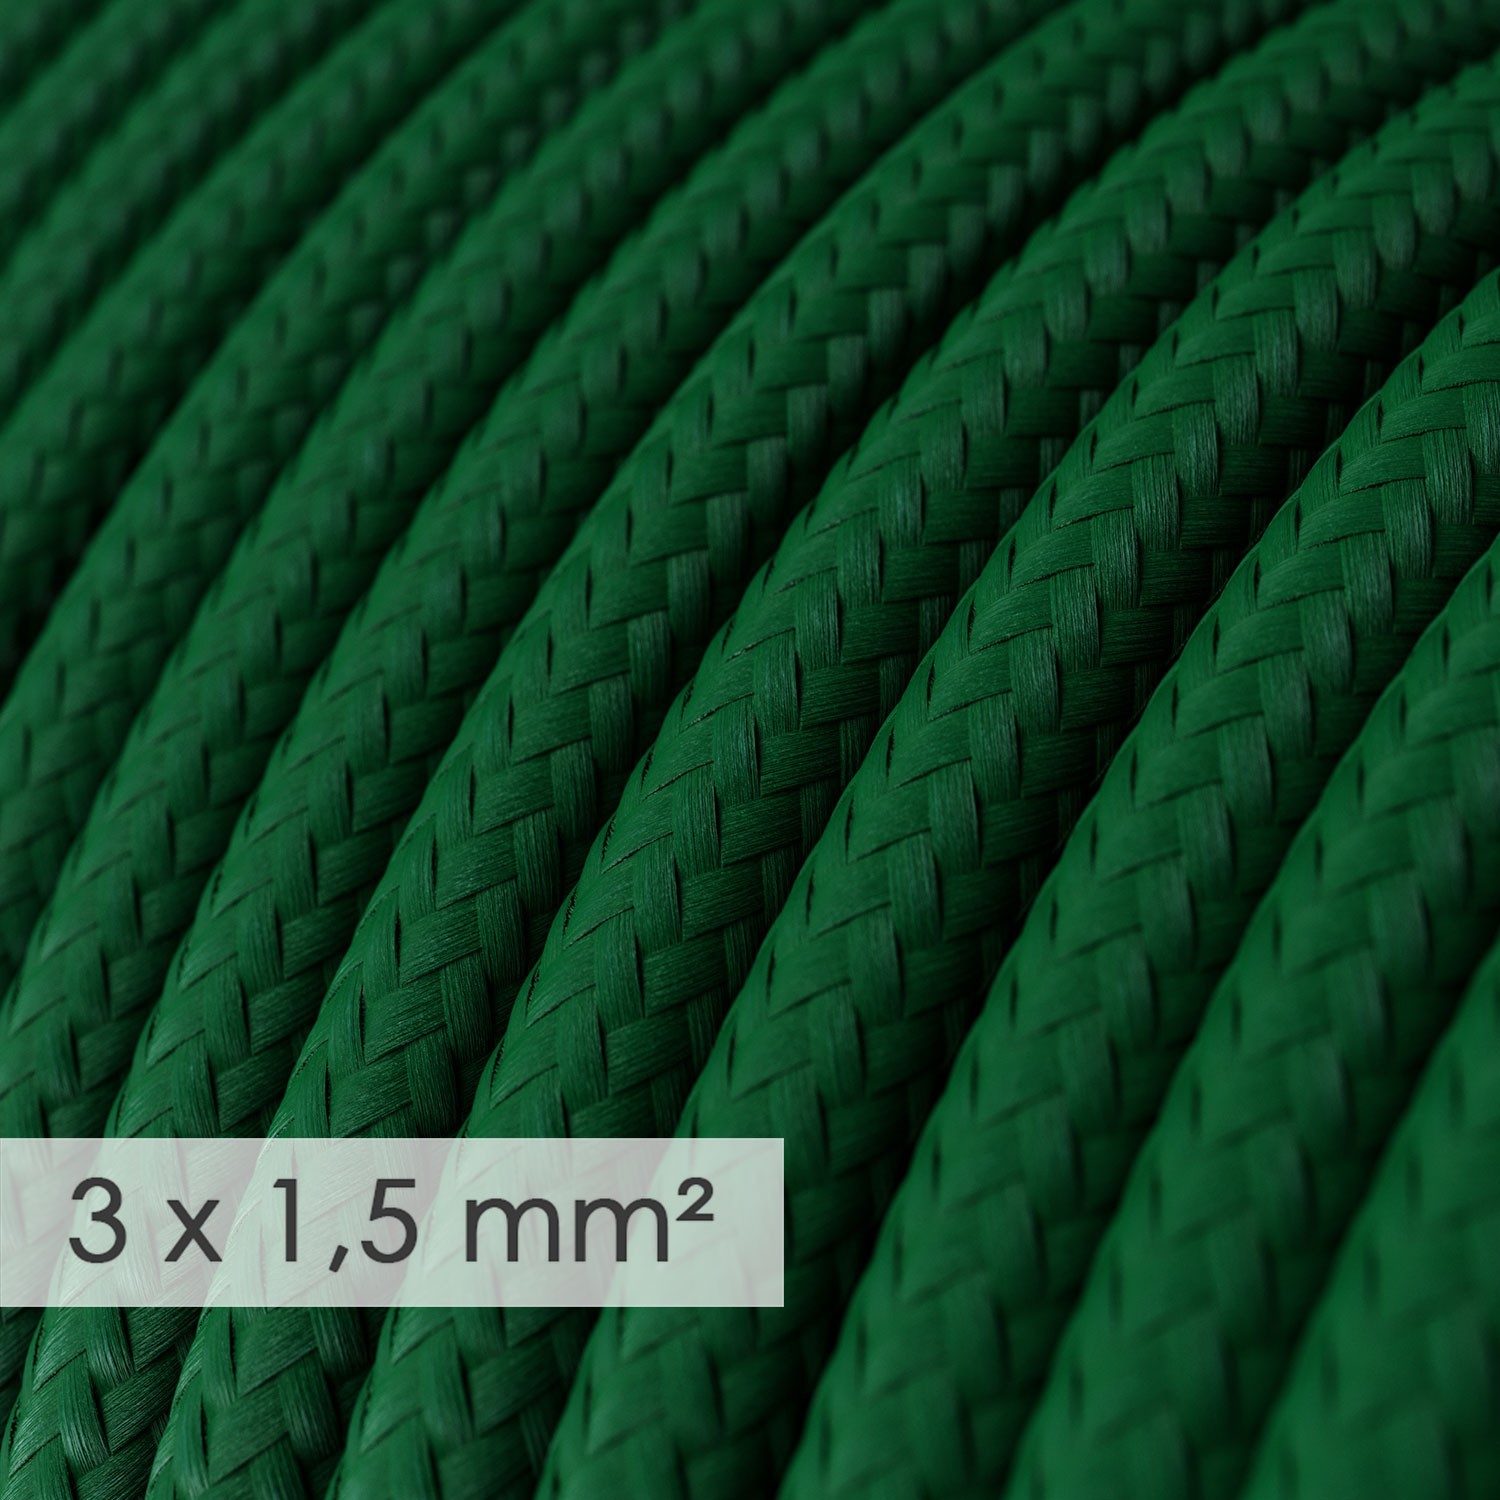 Πολύπριζο με Υφασμάτινο Καλώδιο 3x1.5 Σκούρο Πράσινο RM21 με πλάγιες σούκο υποδοχές.